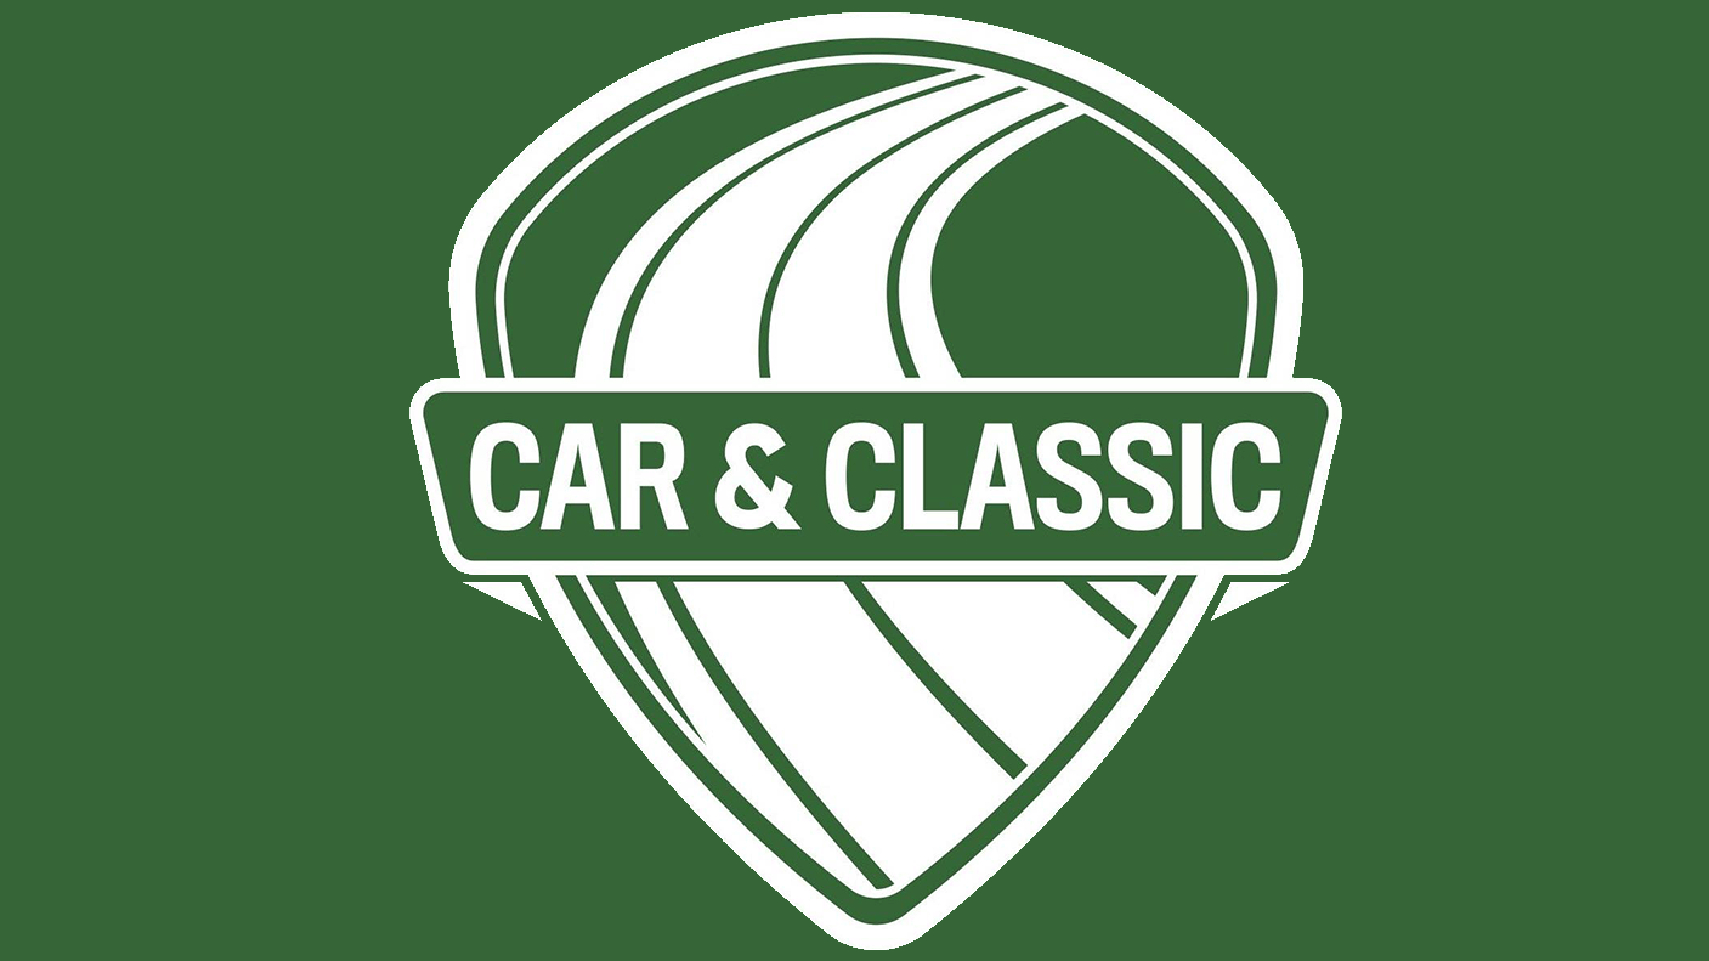 Car & Classic 2.png